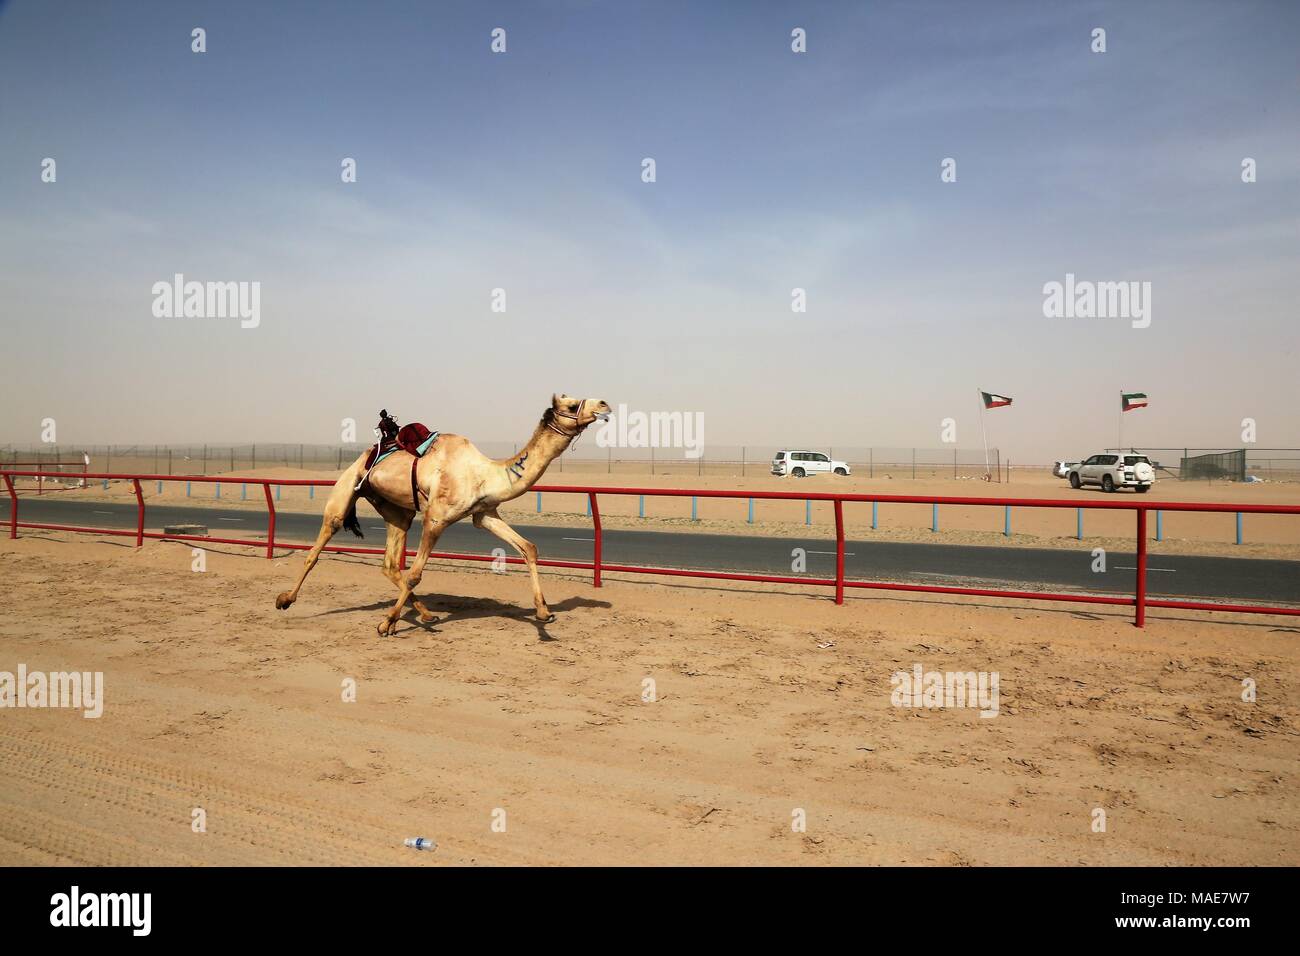 La ville de Koweït. Mar 31, 2018. Photo prise le 31 mars 2018 montre un chameau en compétition dans une course avec robot jockey sur le dos dans le gouvernorat d'Al Ahmadi, dans le sud du Koweït. Course de chameaux est un secteur où la concurrence est très populaire événement sportif au Koweït, elle a lieu les samedis entre octobre et avril dans le gouvernorat d'Al Ahmadi, dans le sud du Koweït. Credit : Nie Yunpeng/Xinhua/Alamy Live News Banque D'Images